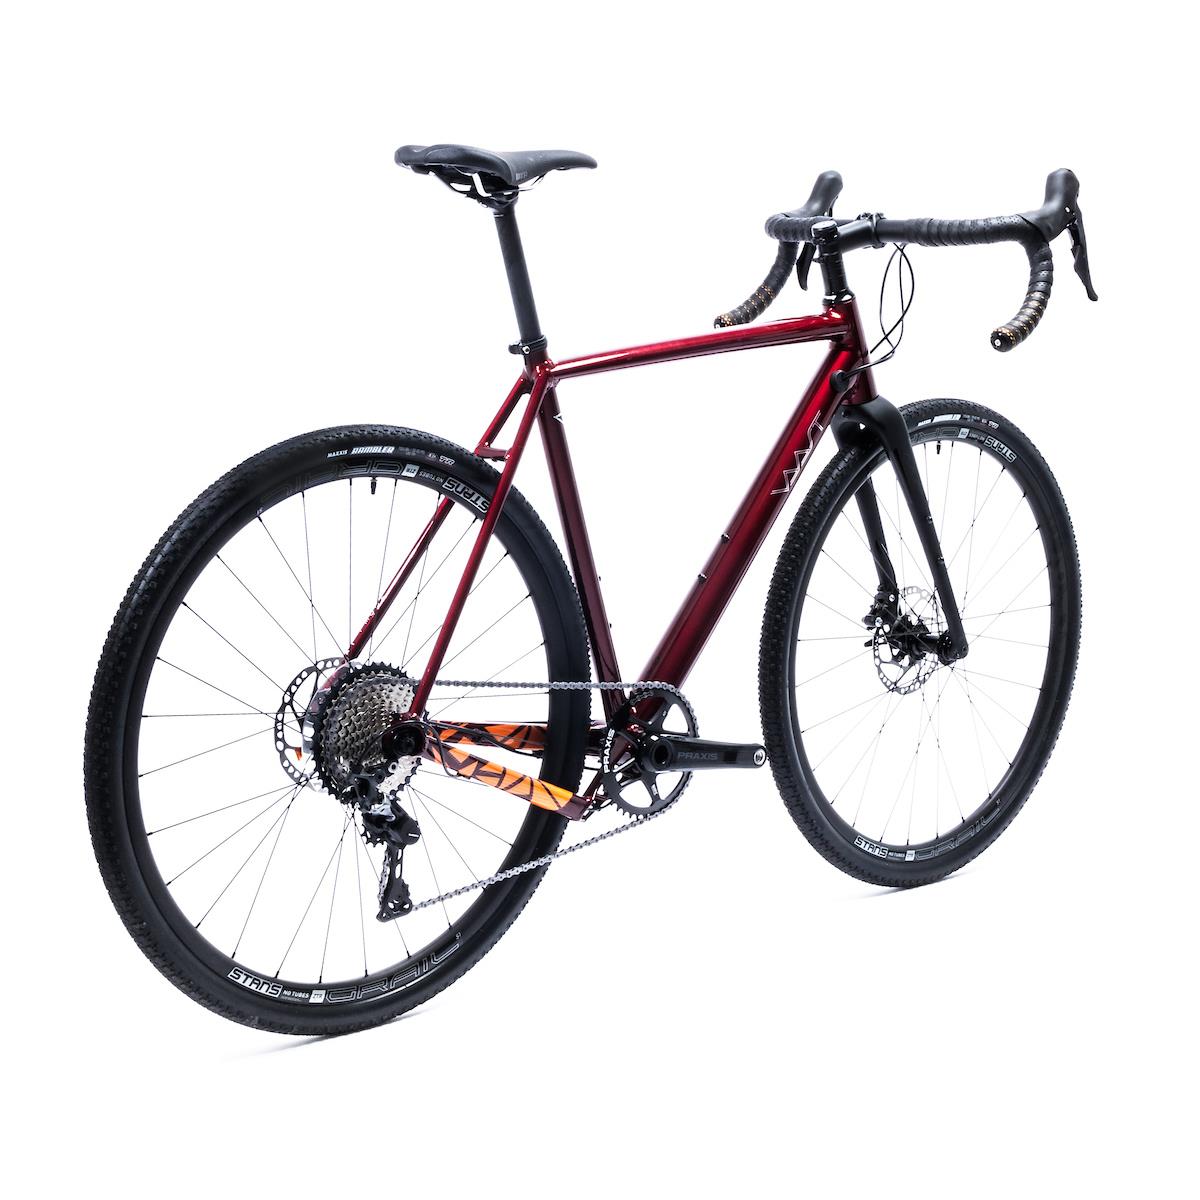 Vaast A/1 700C GRX L Велосипед, 56 cm, Красный